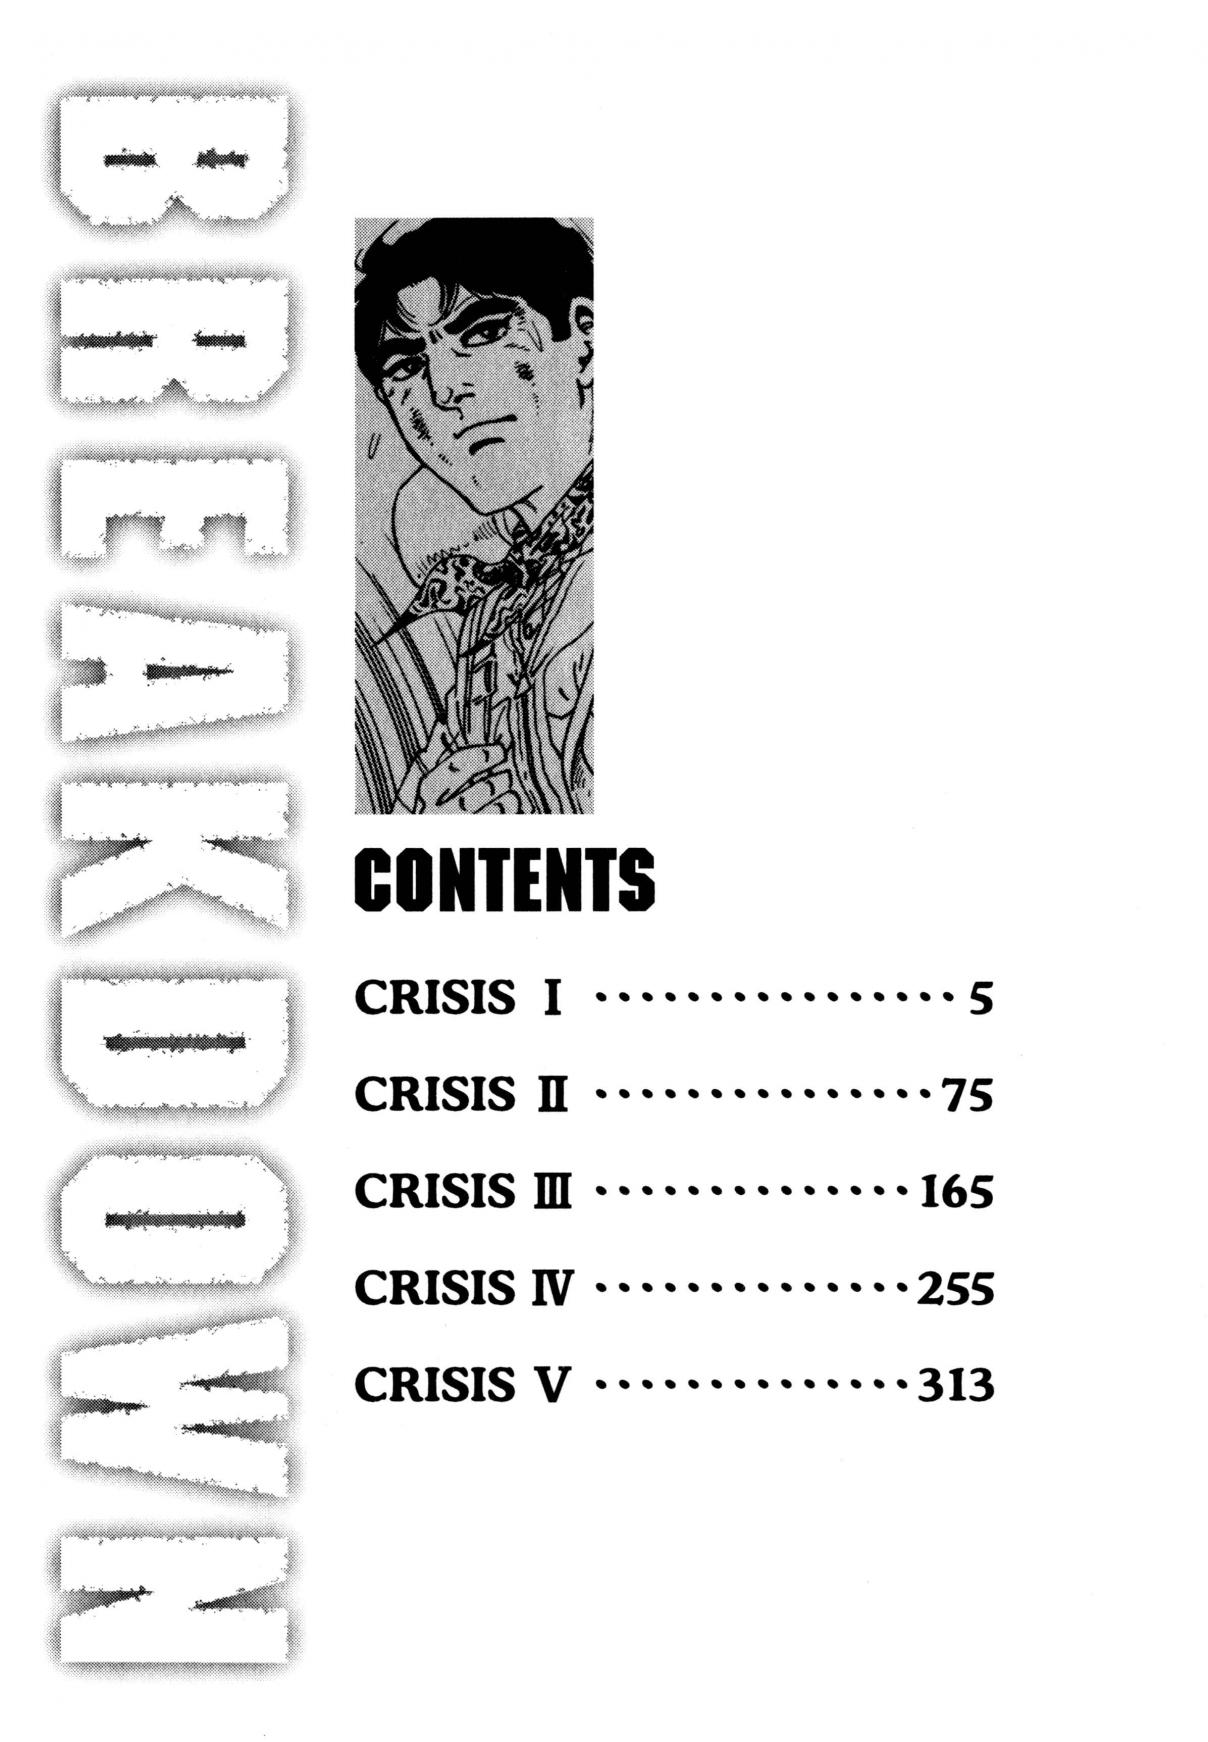 Breakdown Vol. 1 Ch. 1 Crisis I